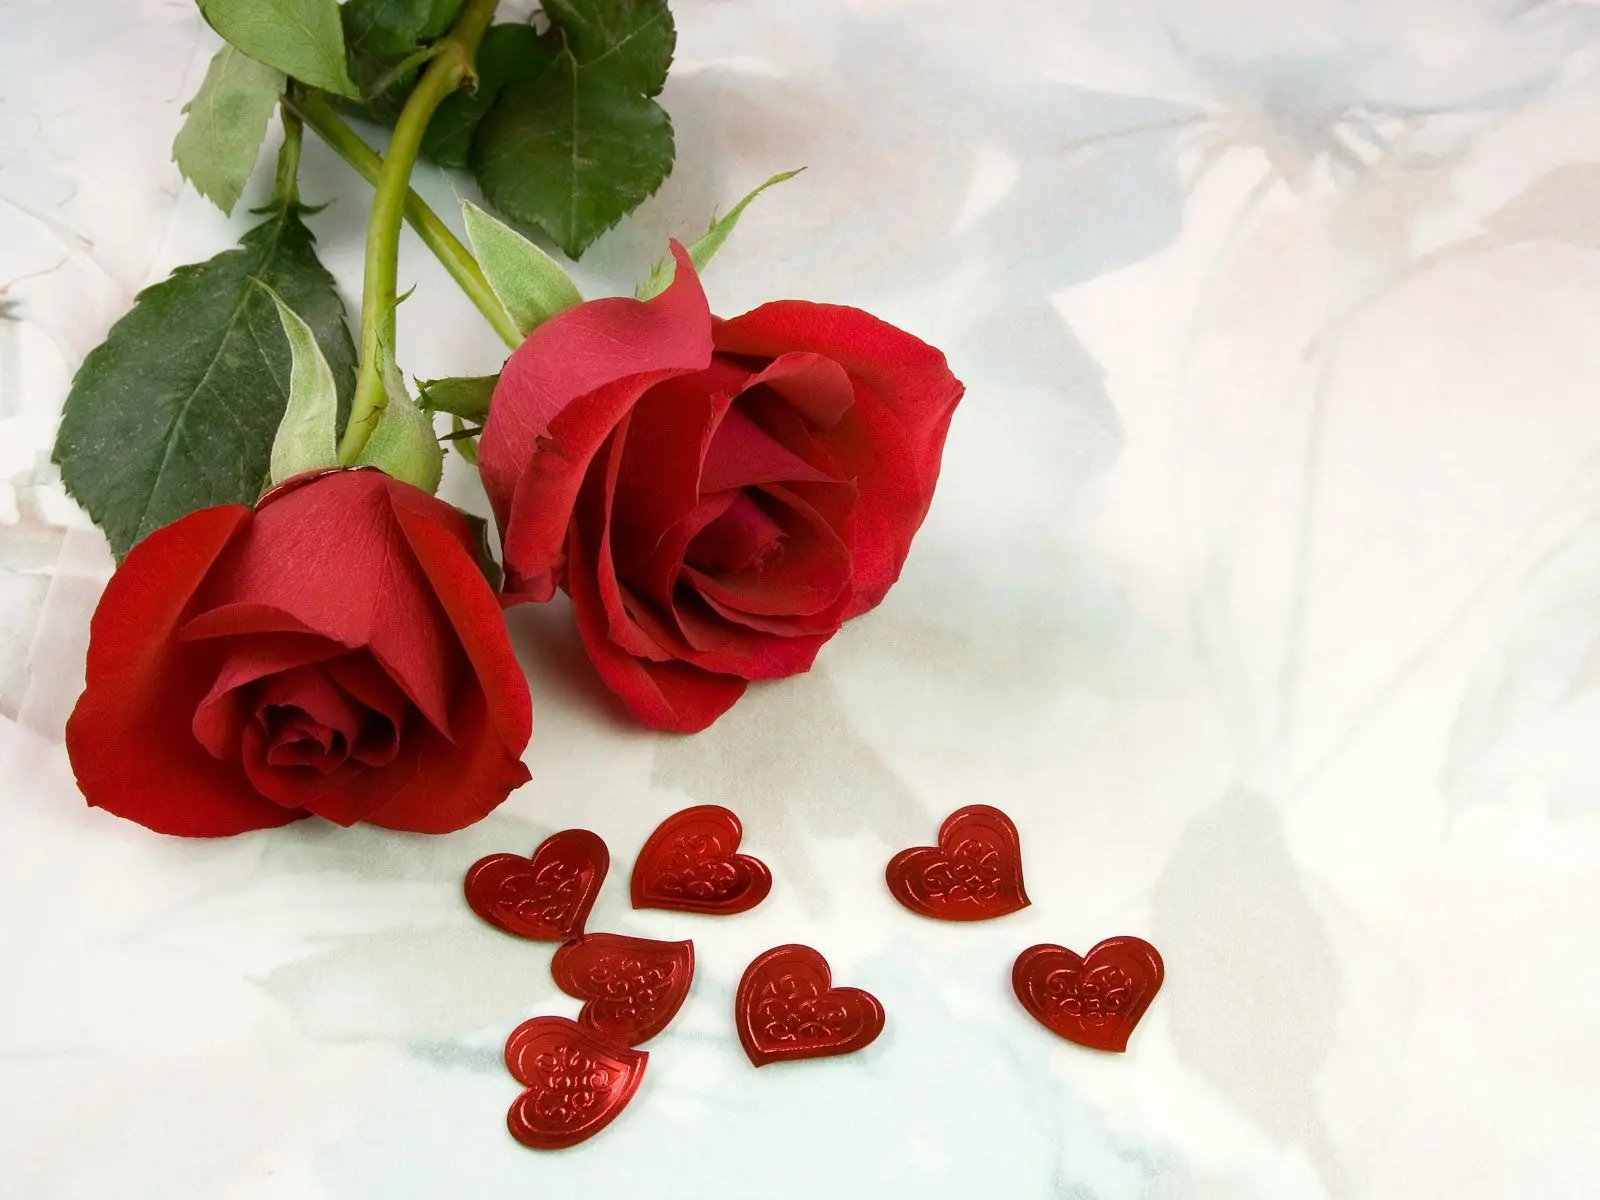 300 gambar mawar cantik yang sayang untuk dilewatkan - Foto mawar Hari Valentine 14 Februari, Foto mawar 8 Maret, Foto mawar 20 Oktober